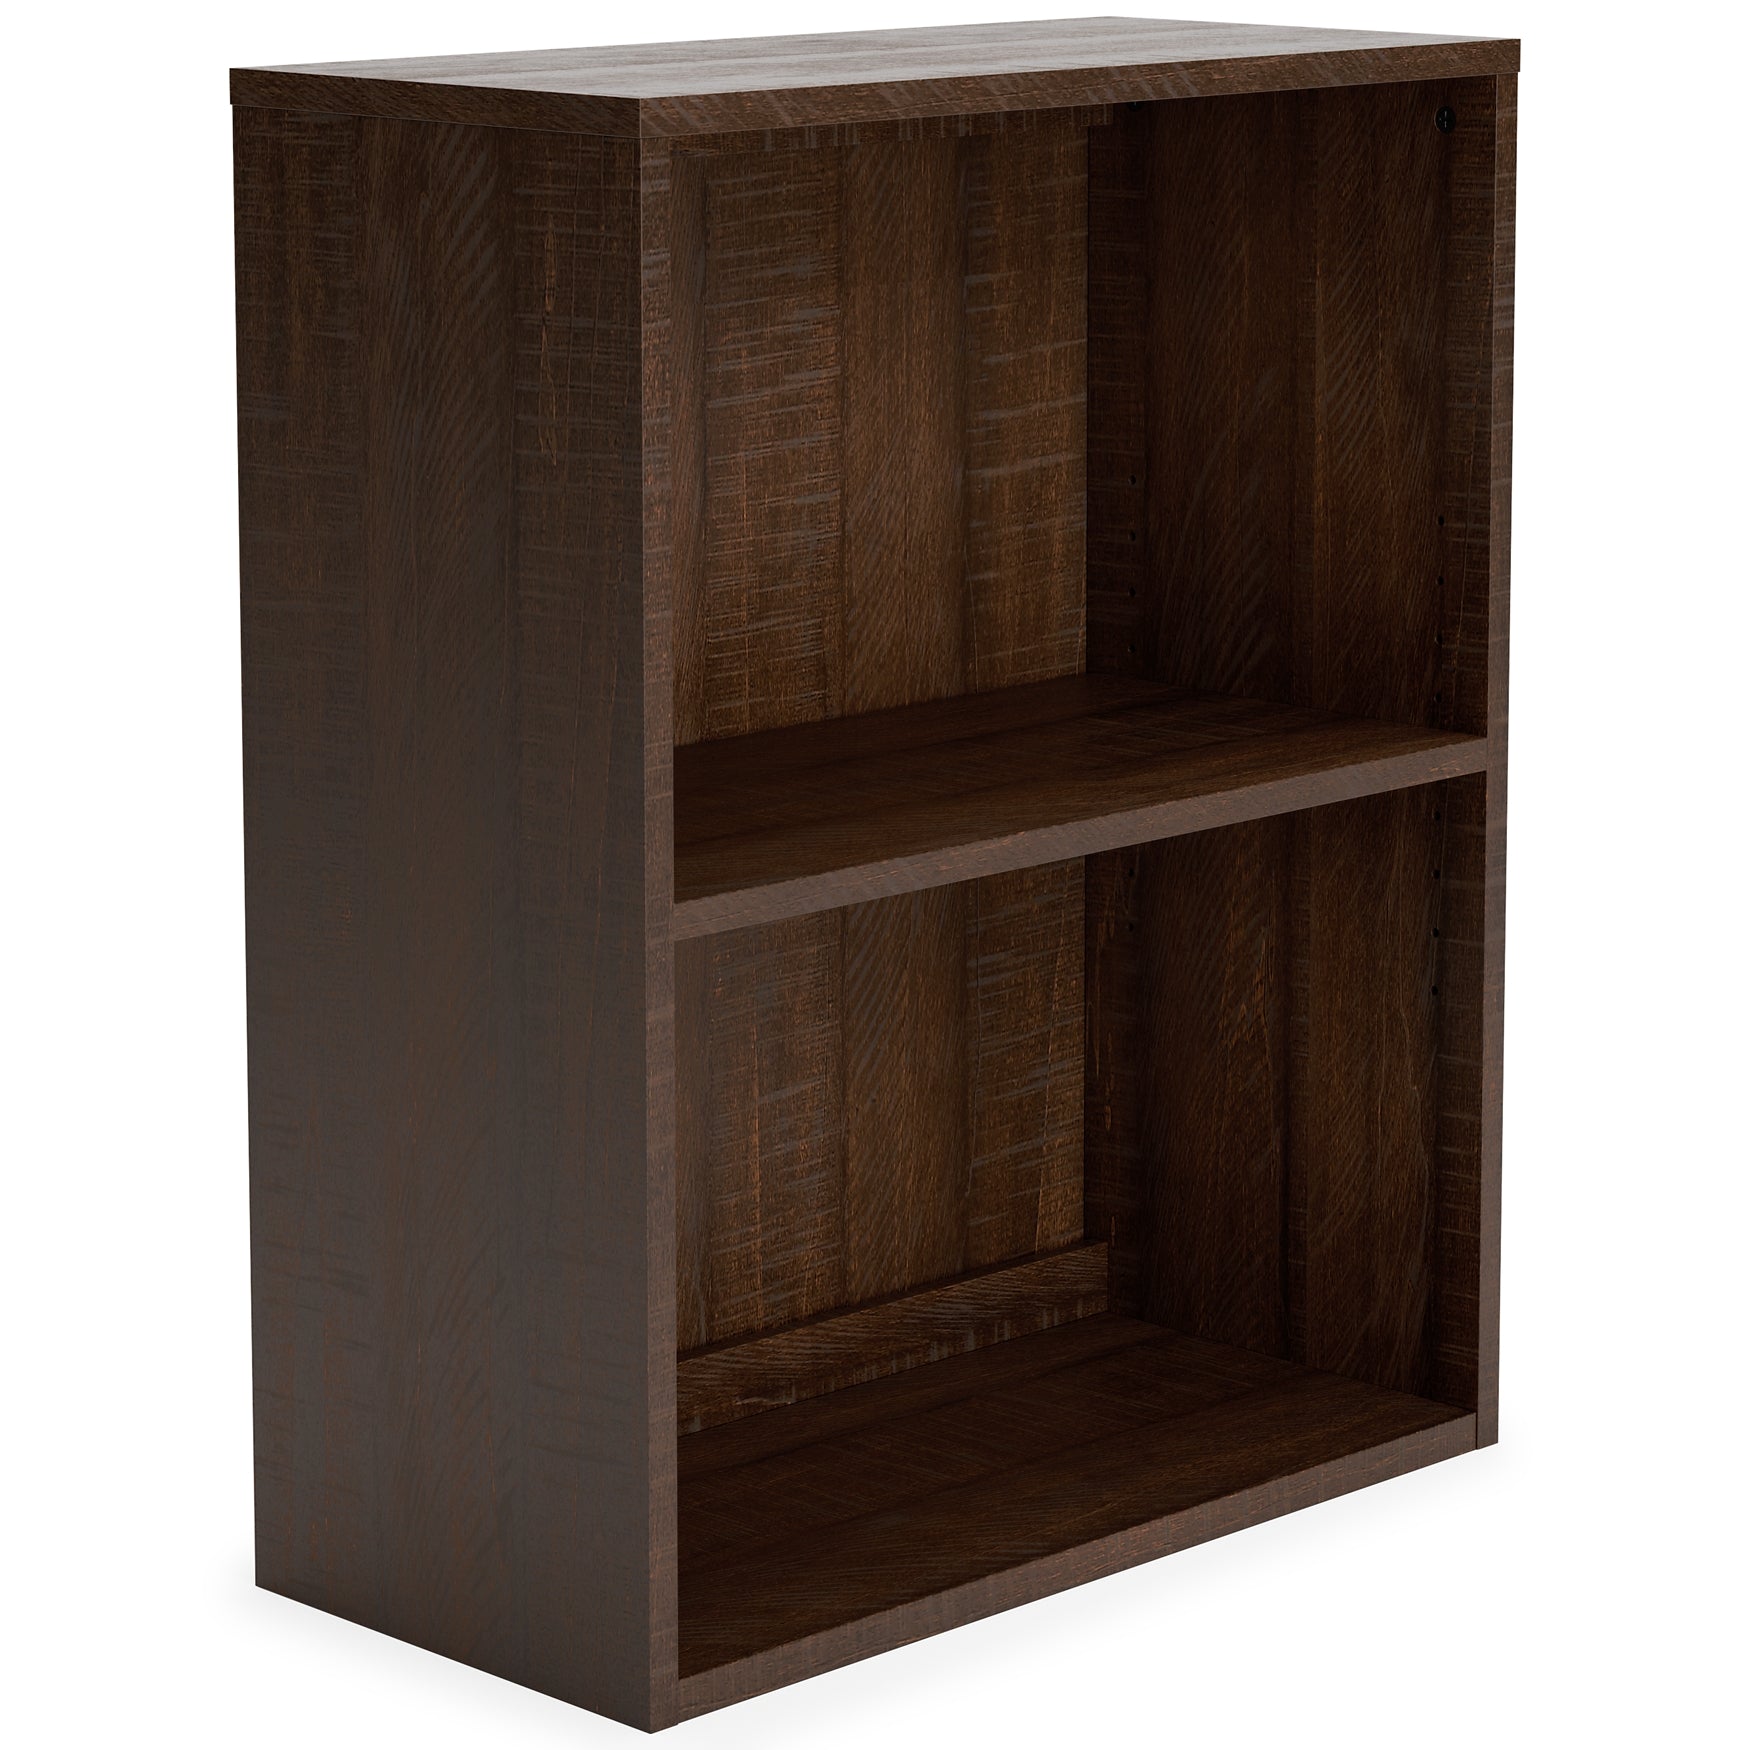 Camiburg Small Bookcase JB's Furniture  Home Furniture, Home Decor, Furniture Store